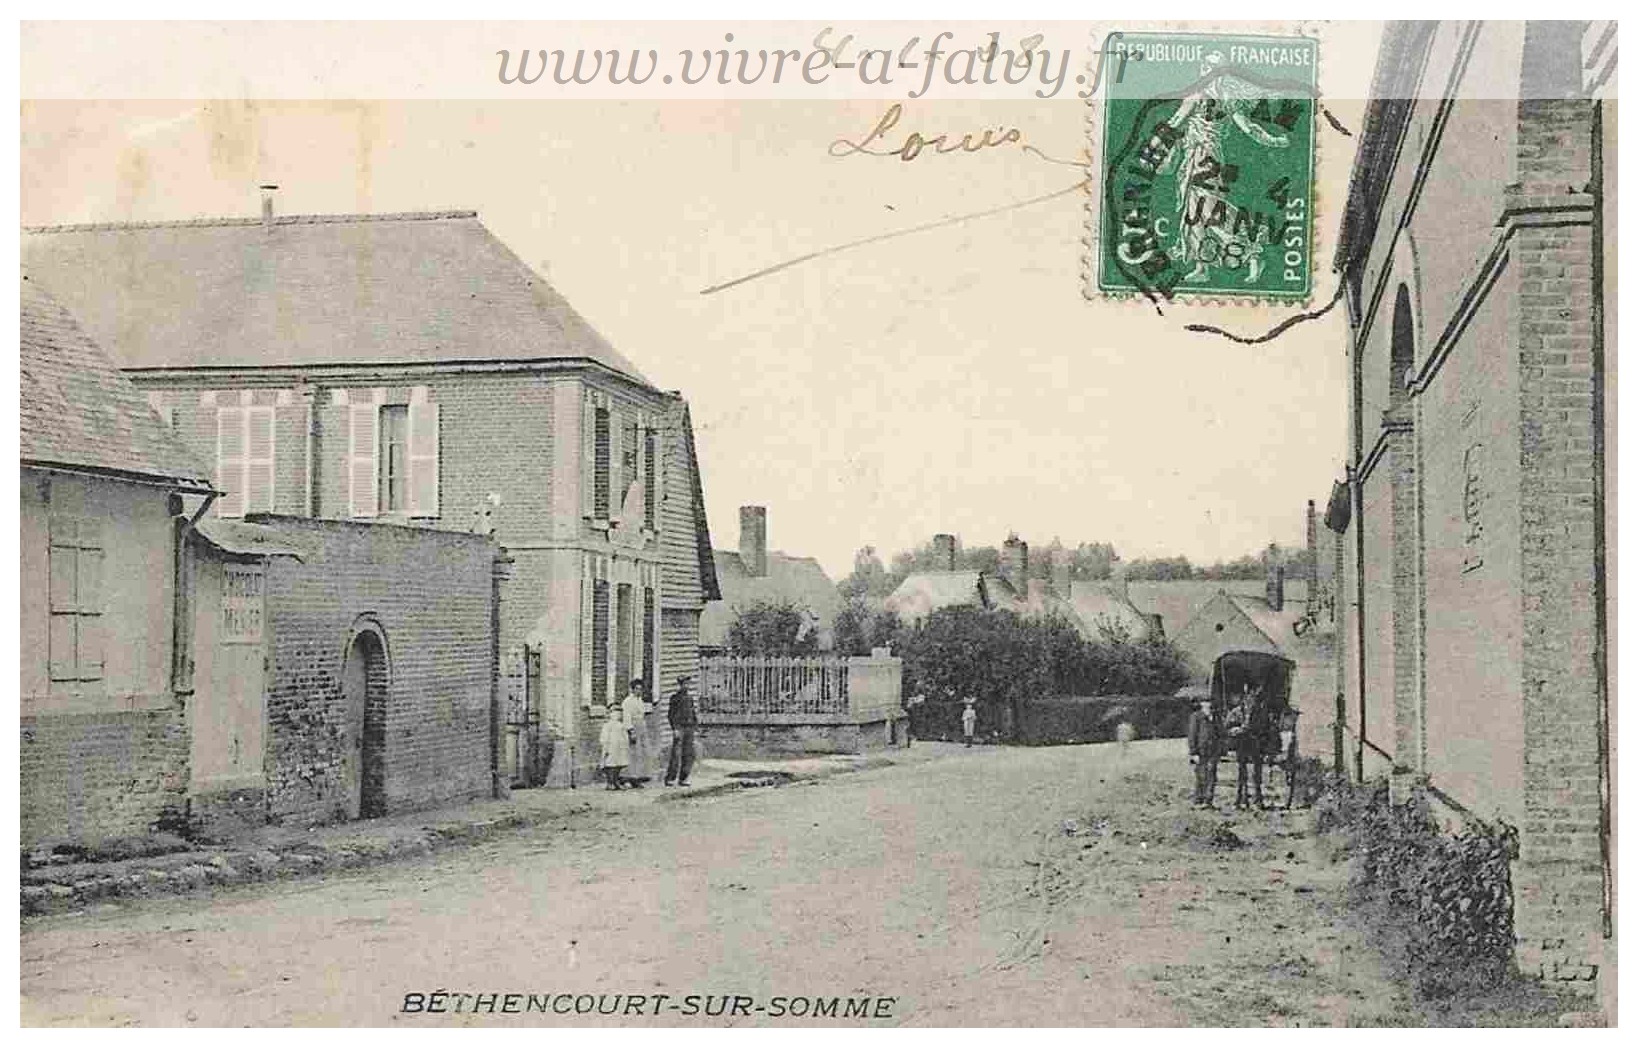 Bethencourt sur Somme